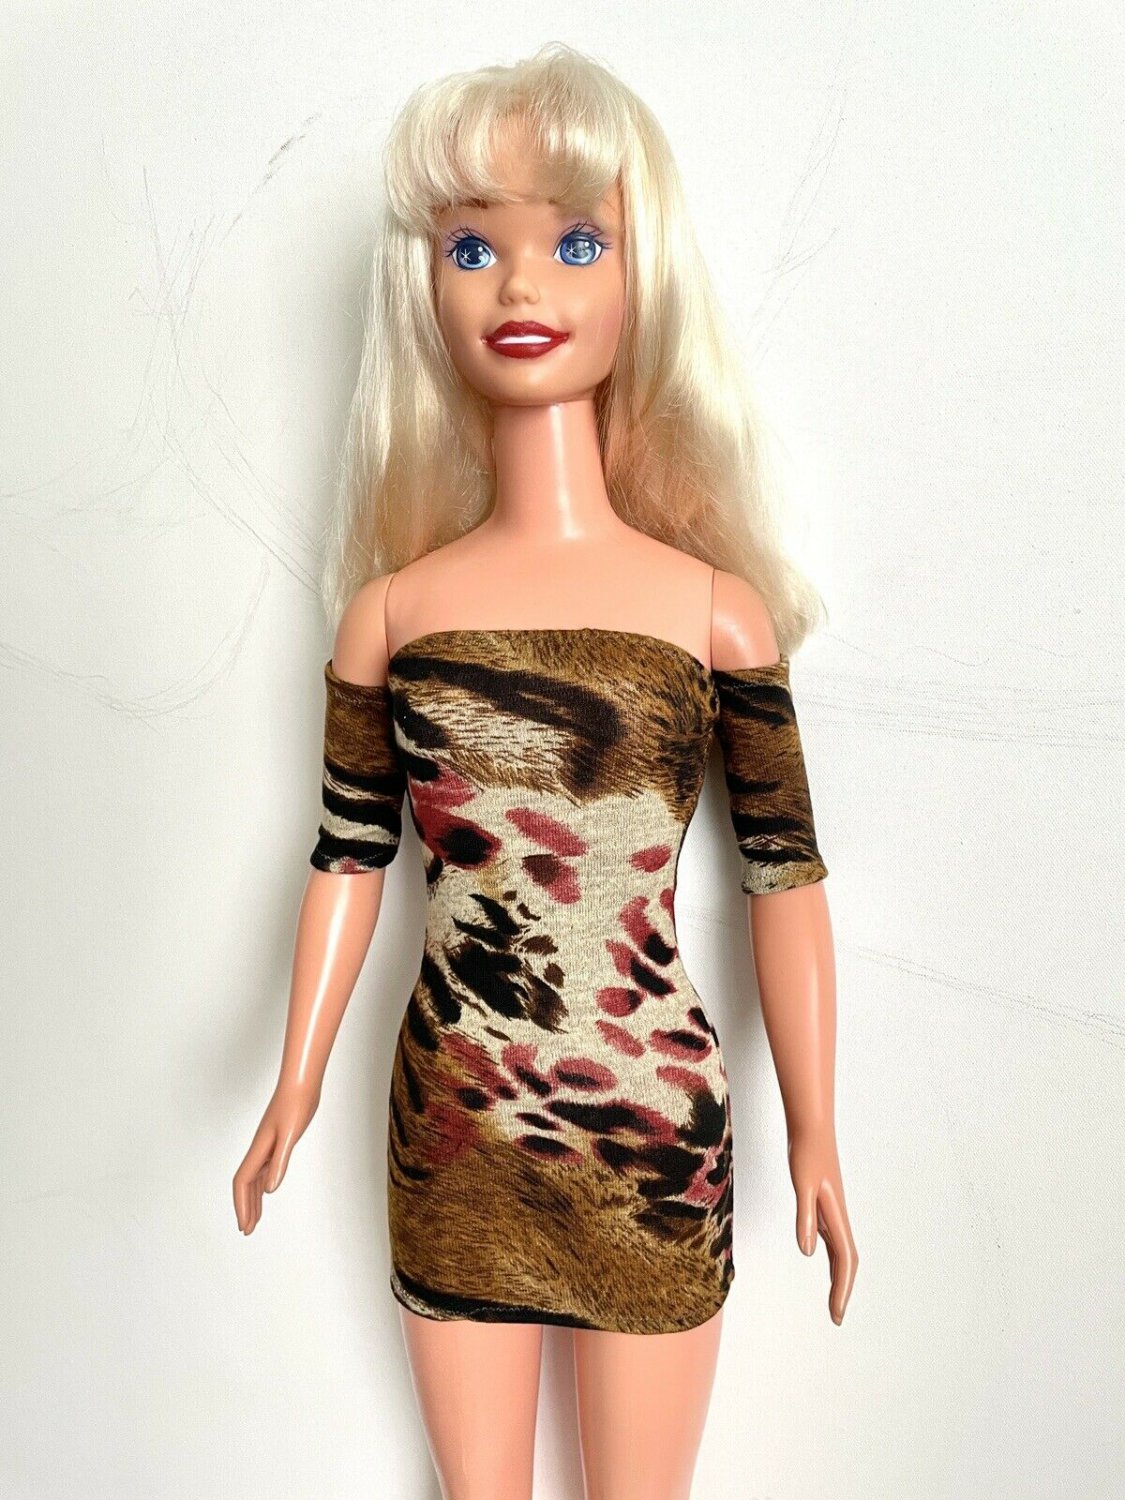 Animal Print Mini Dress for My Size Barbie Doll 36". Bodycon